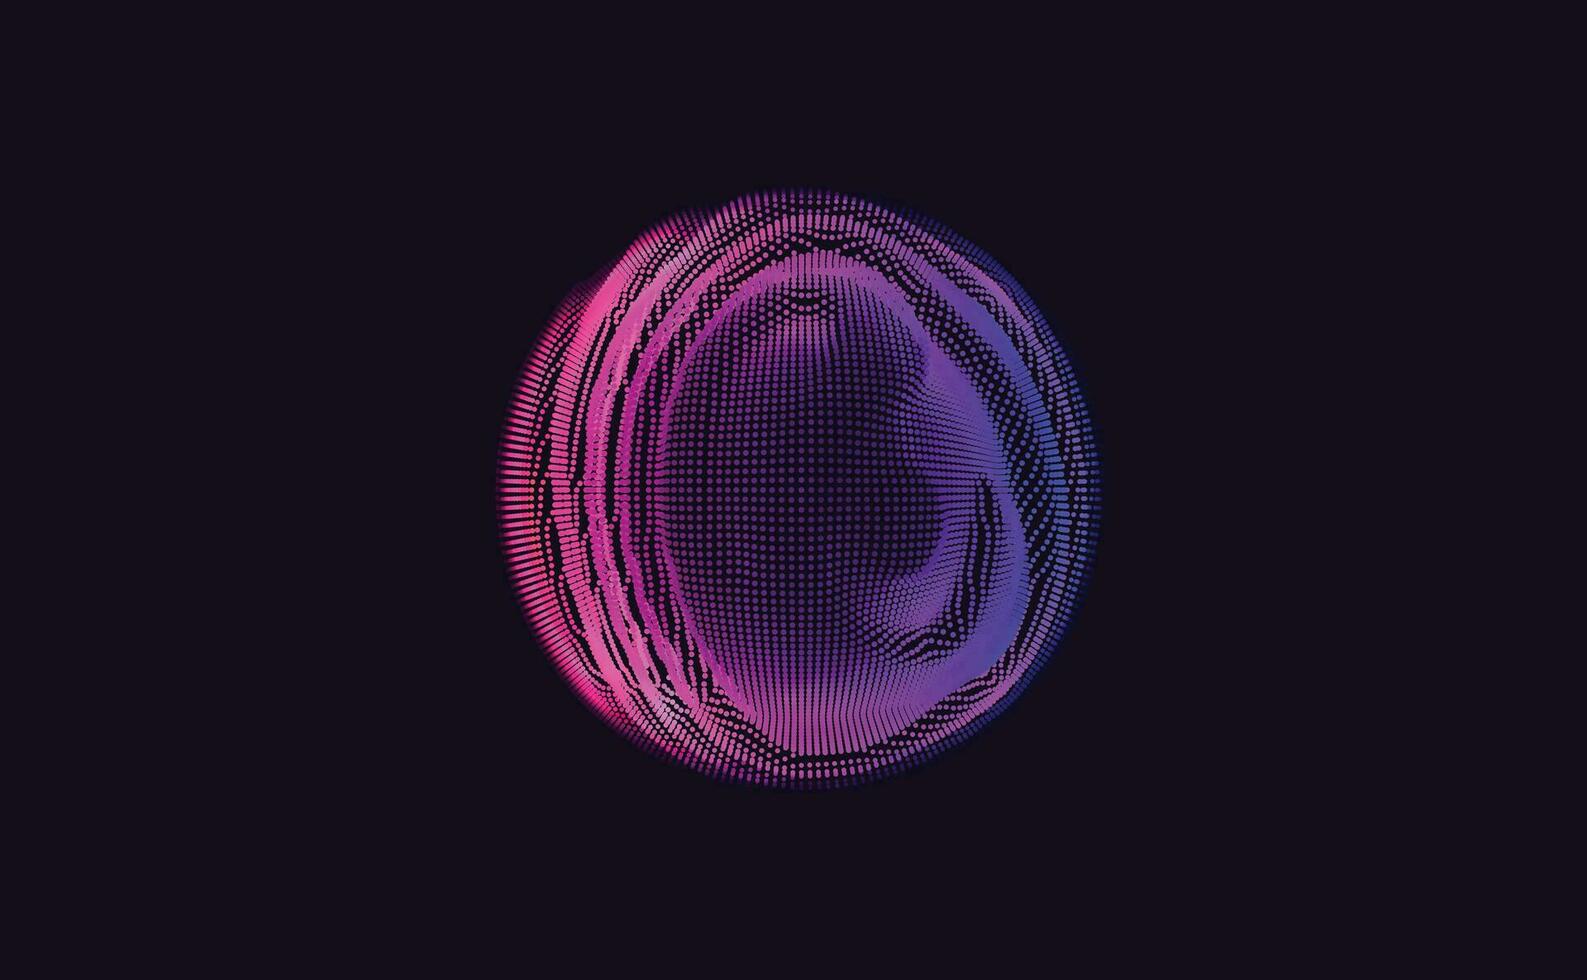 abstract digitaal cirkels van deeltjes met lawaai. futuristische circulaire geluid Golf. groot gegevens visualisatie. 3d virtueel ruimte vr cyberruimte. crypto valuta concept. vector